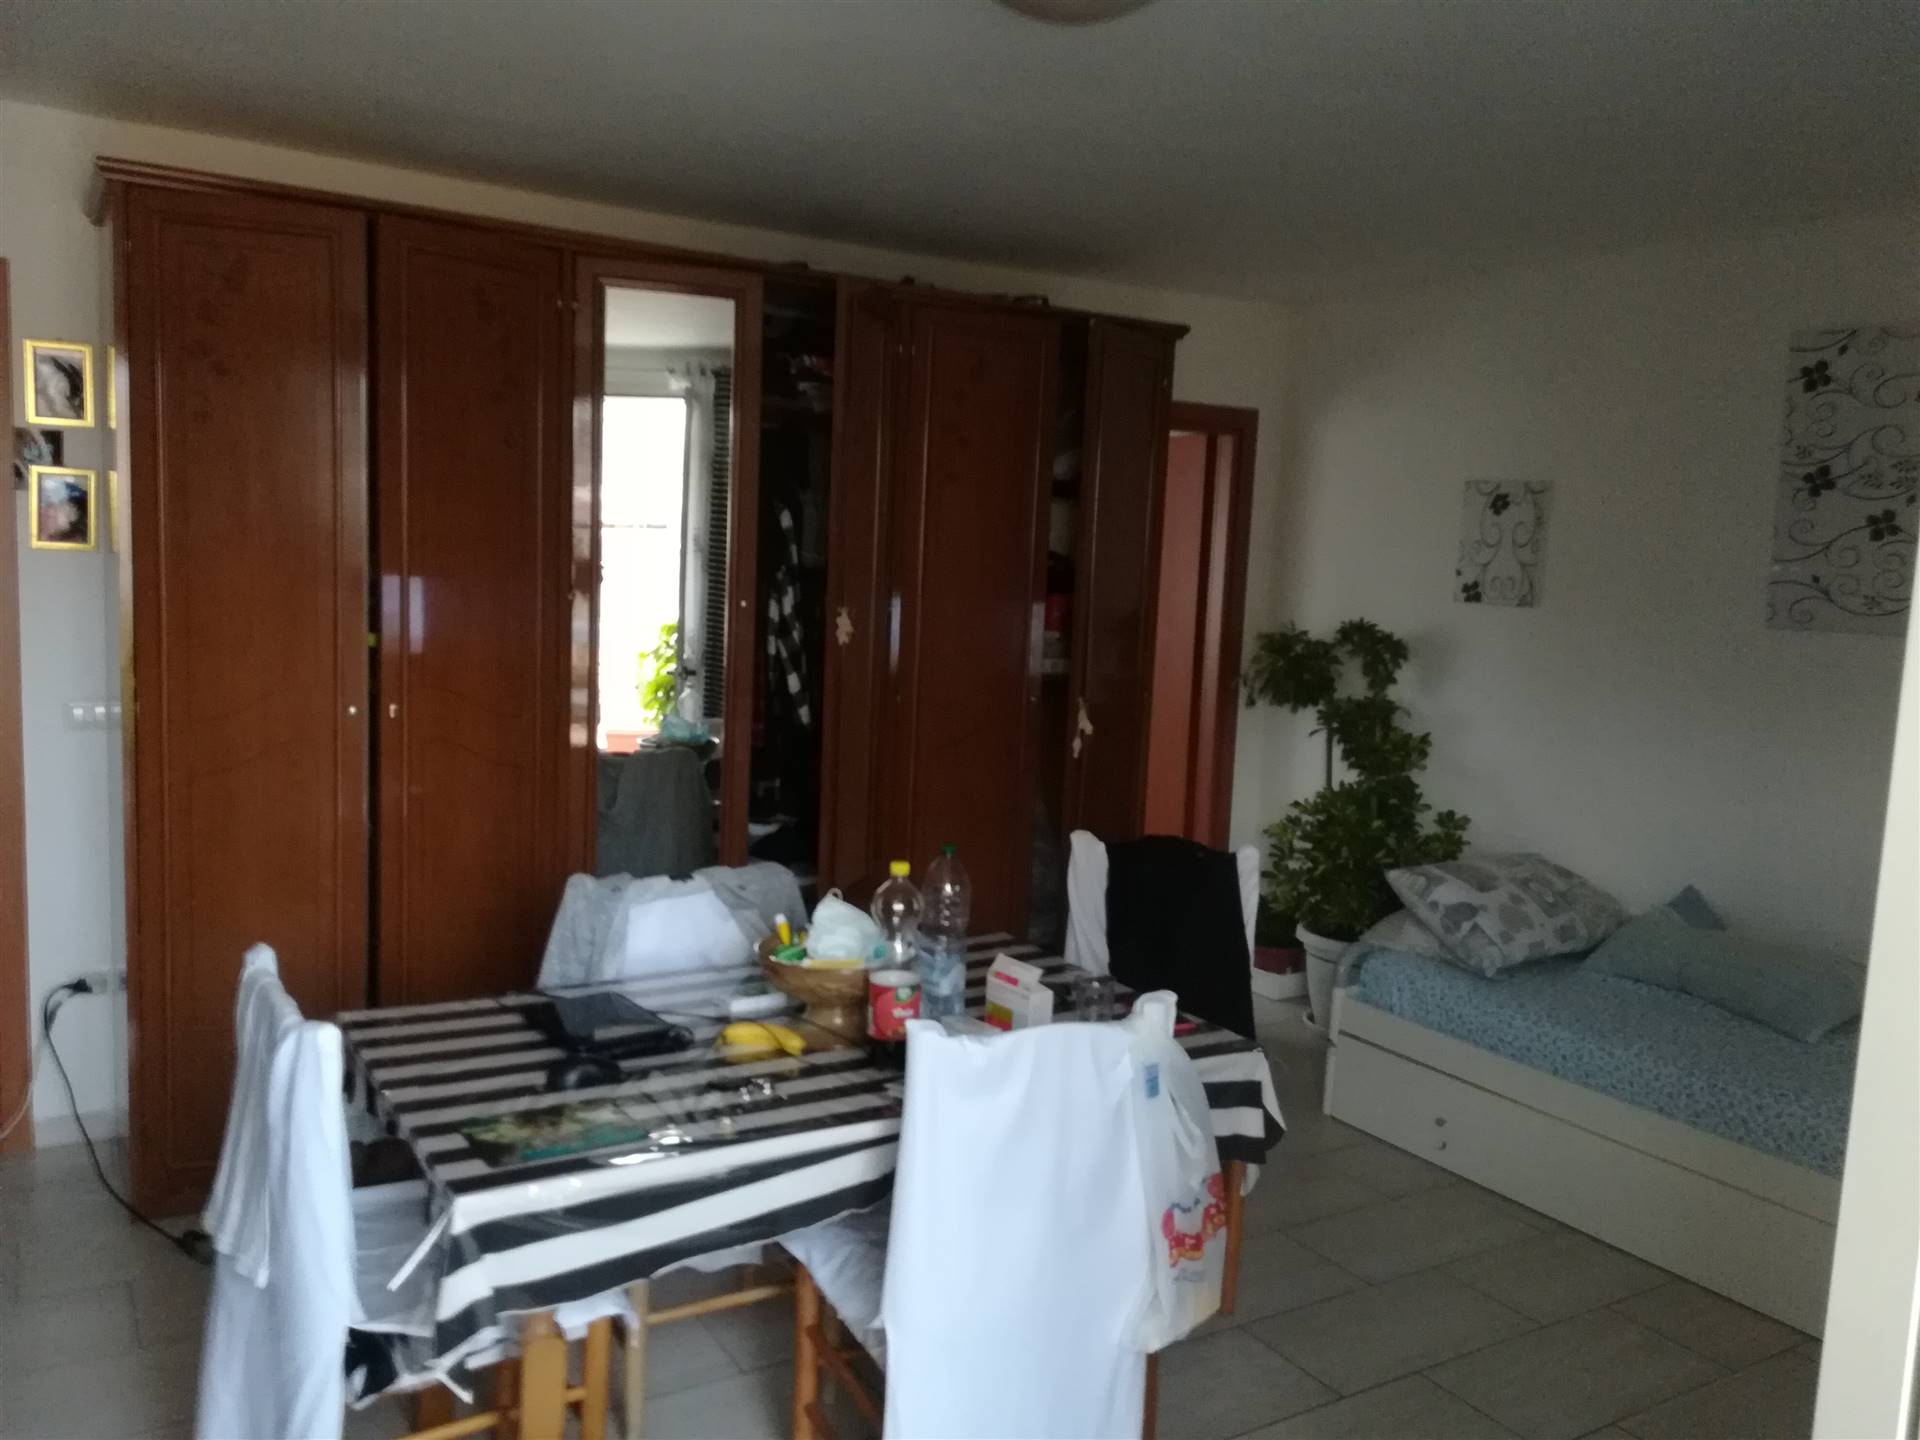 Appartamento in vendita a Licata, 2 locali, zona Località: CORSO ITALIA, prezzo € 50.000 | PortaleAgenzieImmobiliari.it